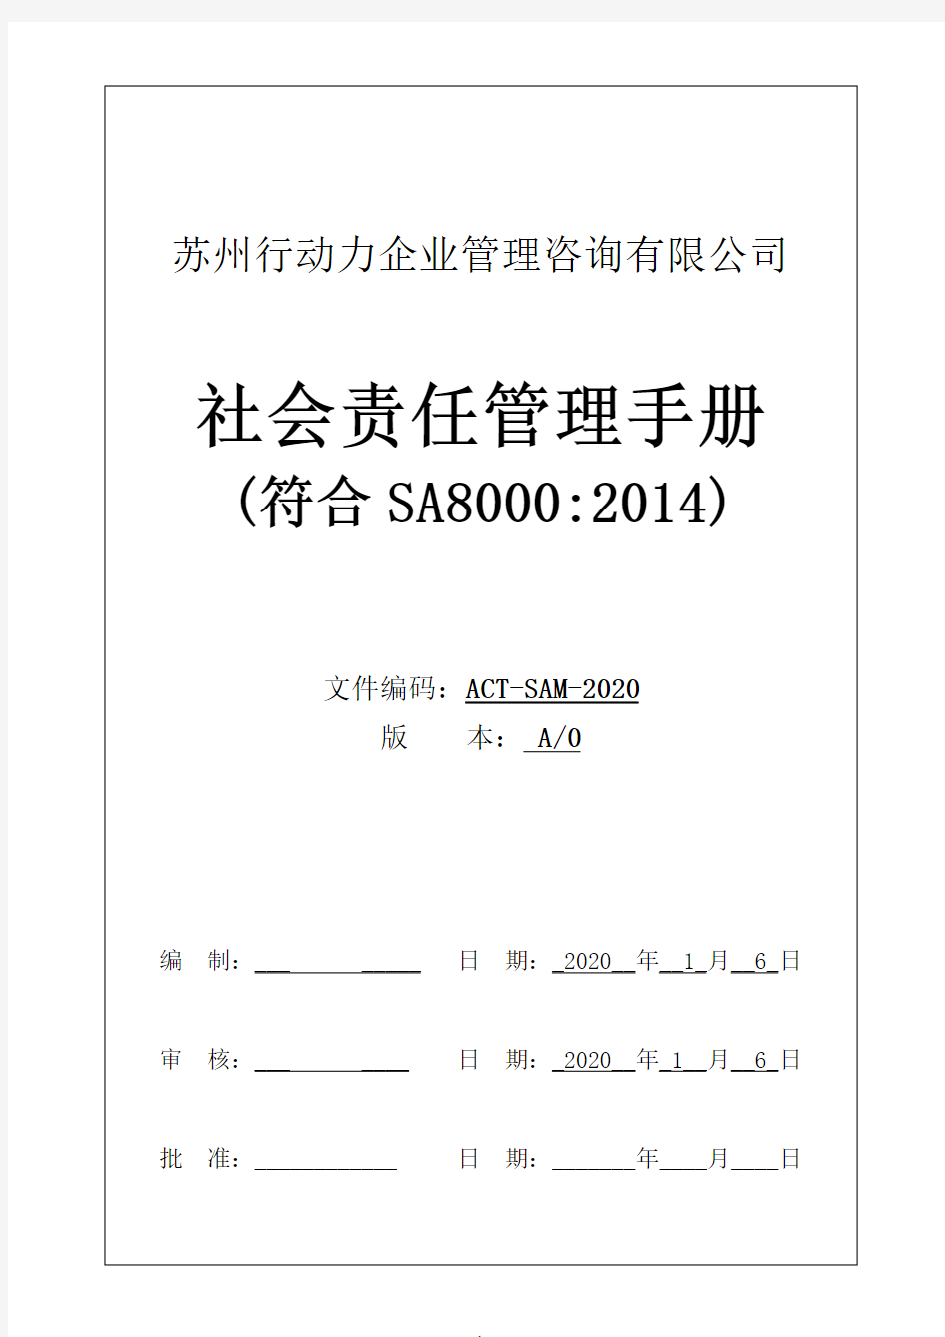 SA8000社会责任管理手册